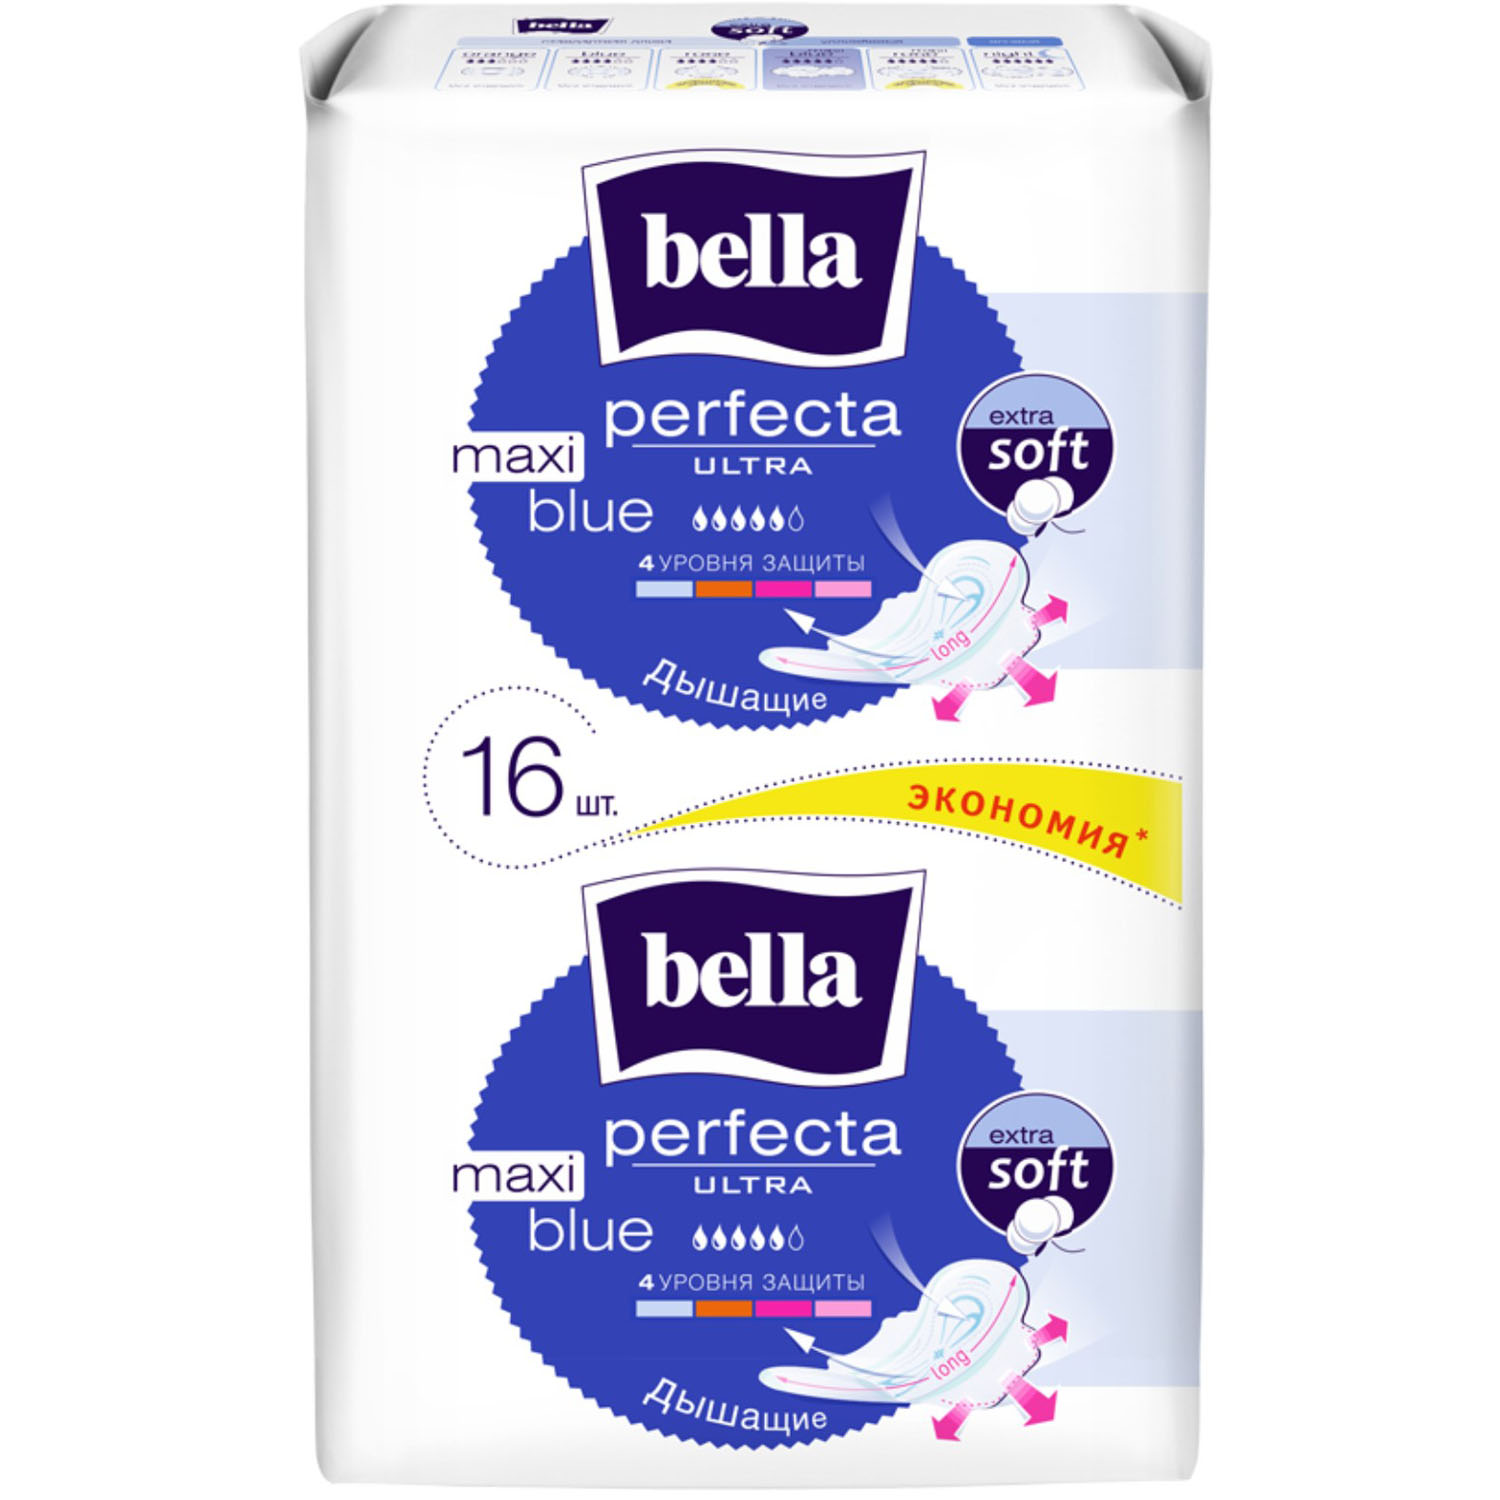 

Bella Ультратонкие женские гигиенические прокладки для критических дней Perfecta Ultra Maxi Blue, 16 шт (Bella, Гигиенические прокладки), Гигиенические прокладки